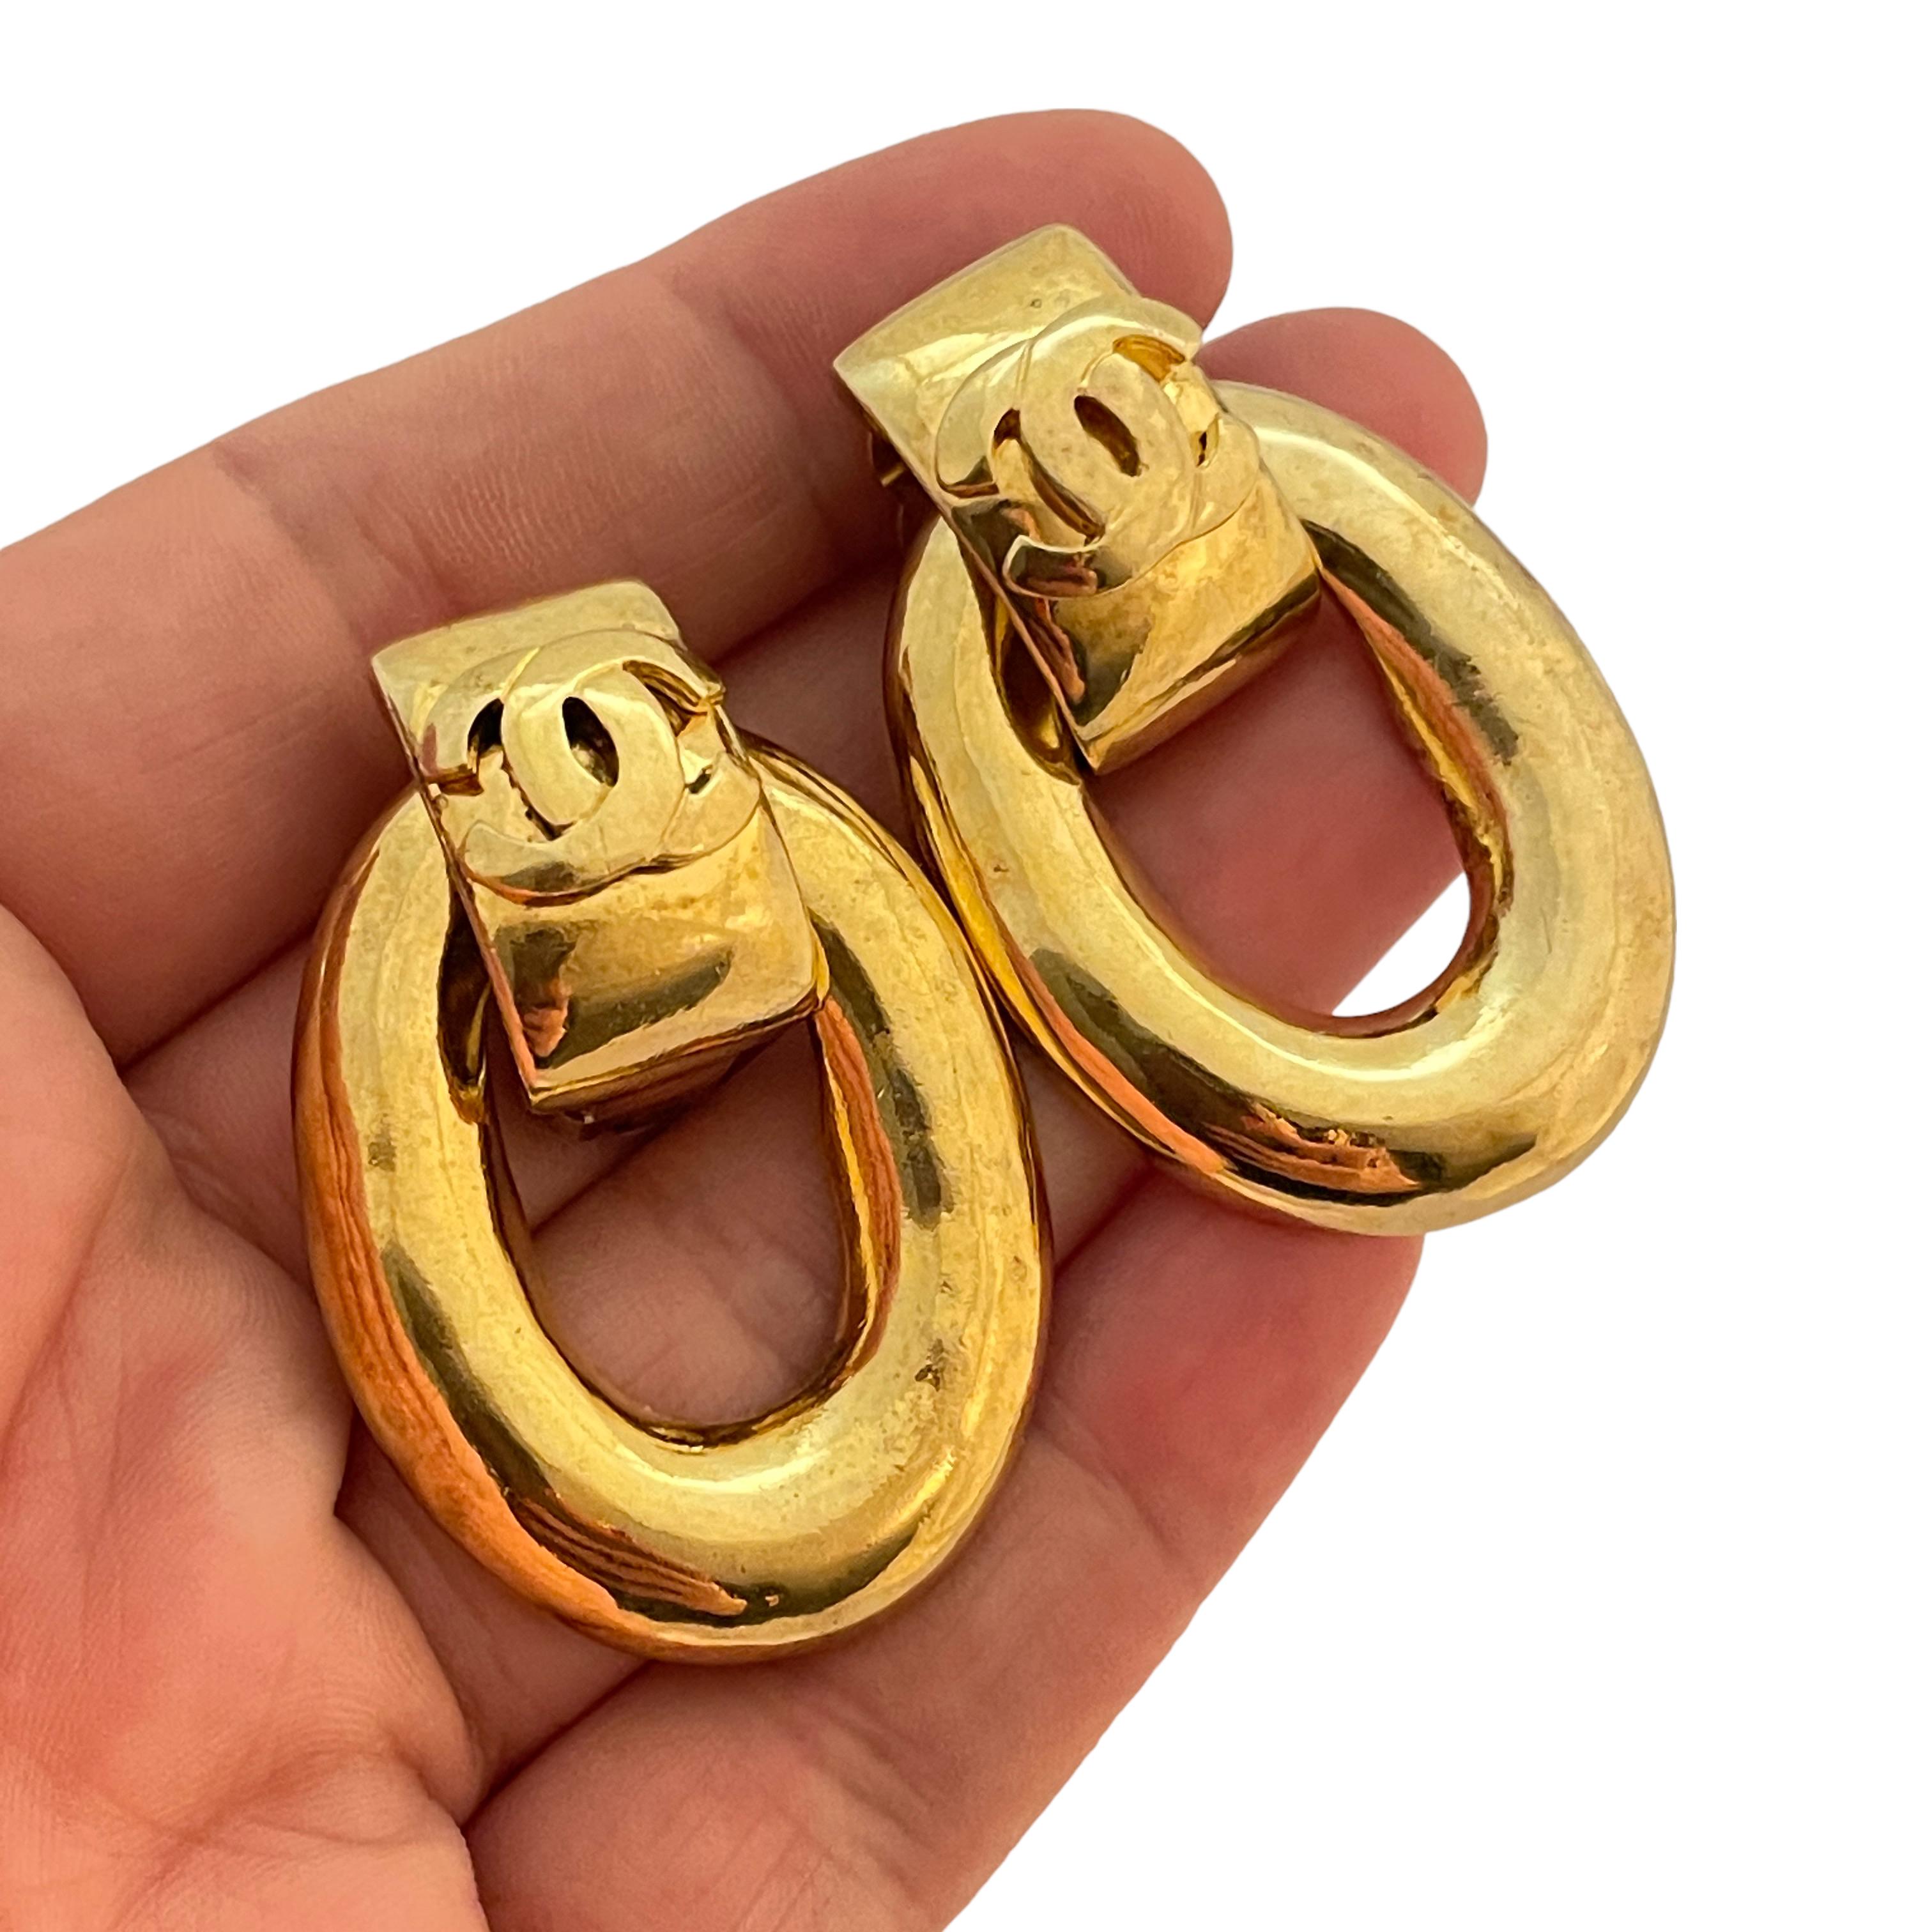 DETTAGLI

- firmato CHANEL Made in France

- placcato oro 

- orecchini a clip di design vintage

MISURE

- 1,88